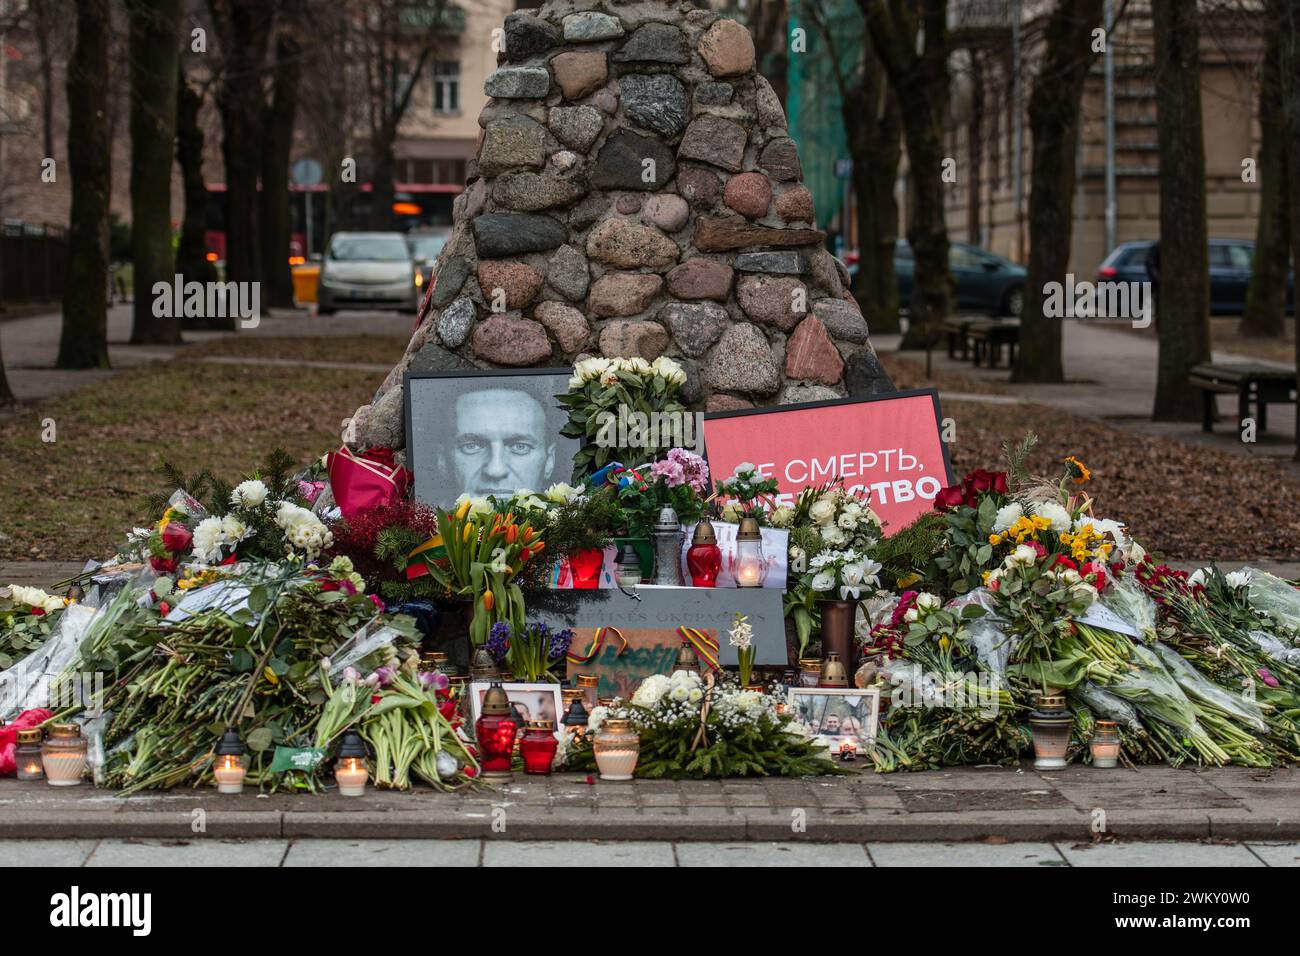 Blumen und Kerzen wurden in Vilnius zur spontanen Gedenkfeier für den russischen Oppositionsführer Alexej Nawalny gelegt, mit Porträts und Botschaften von Menschen Stockfoto